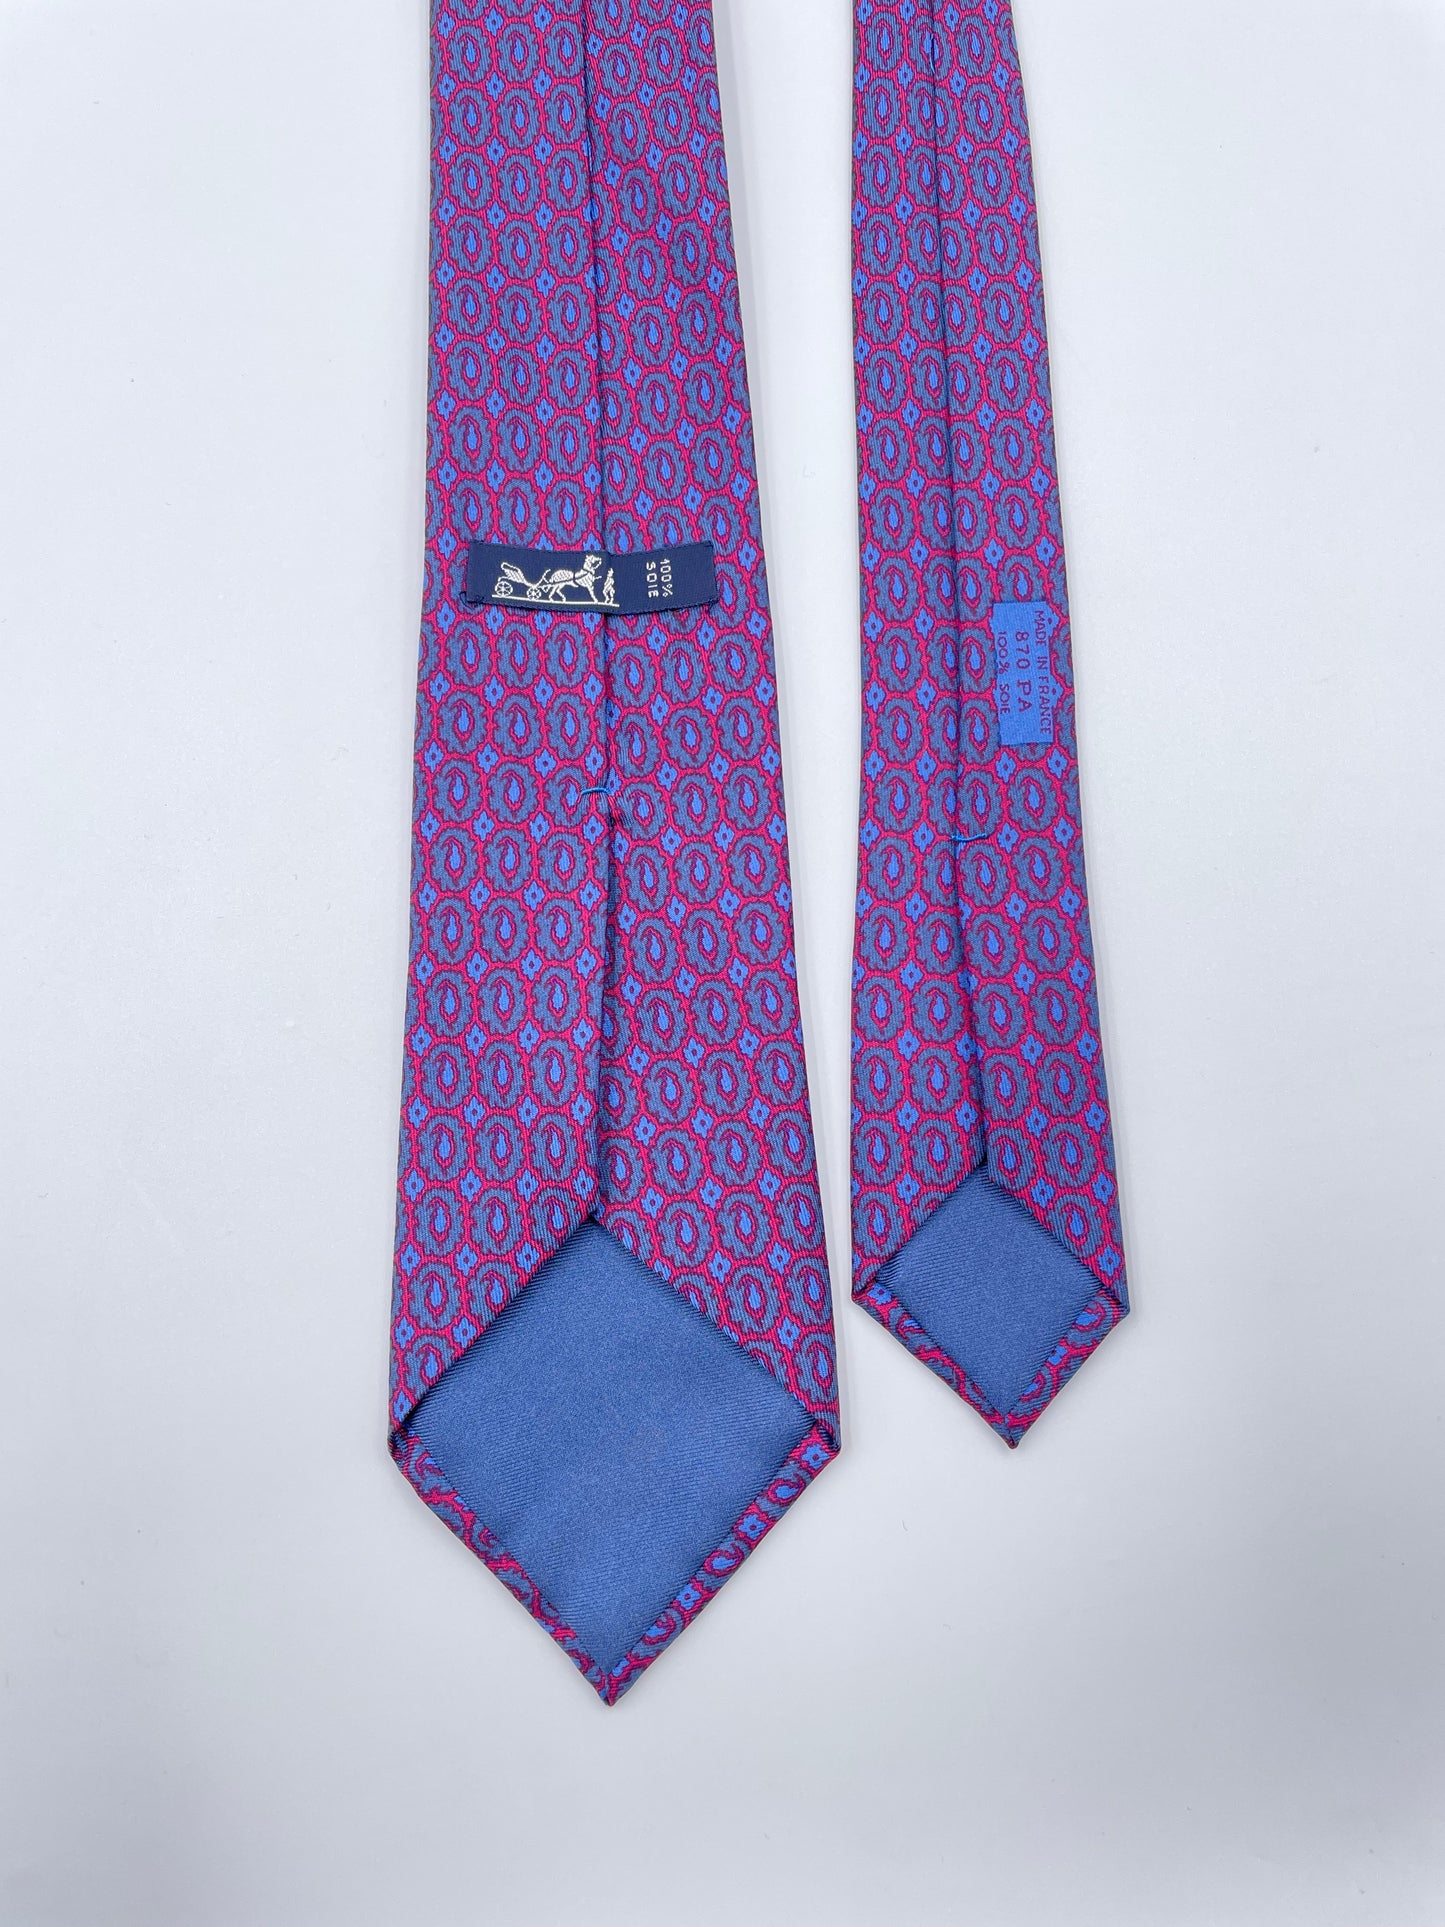 Cravatta Hermès